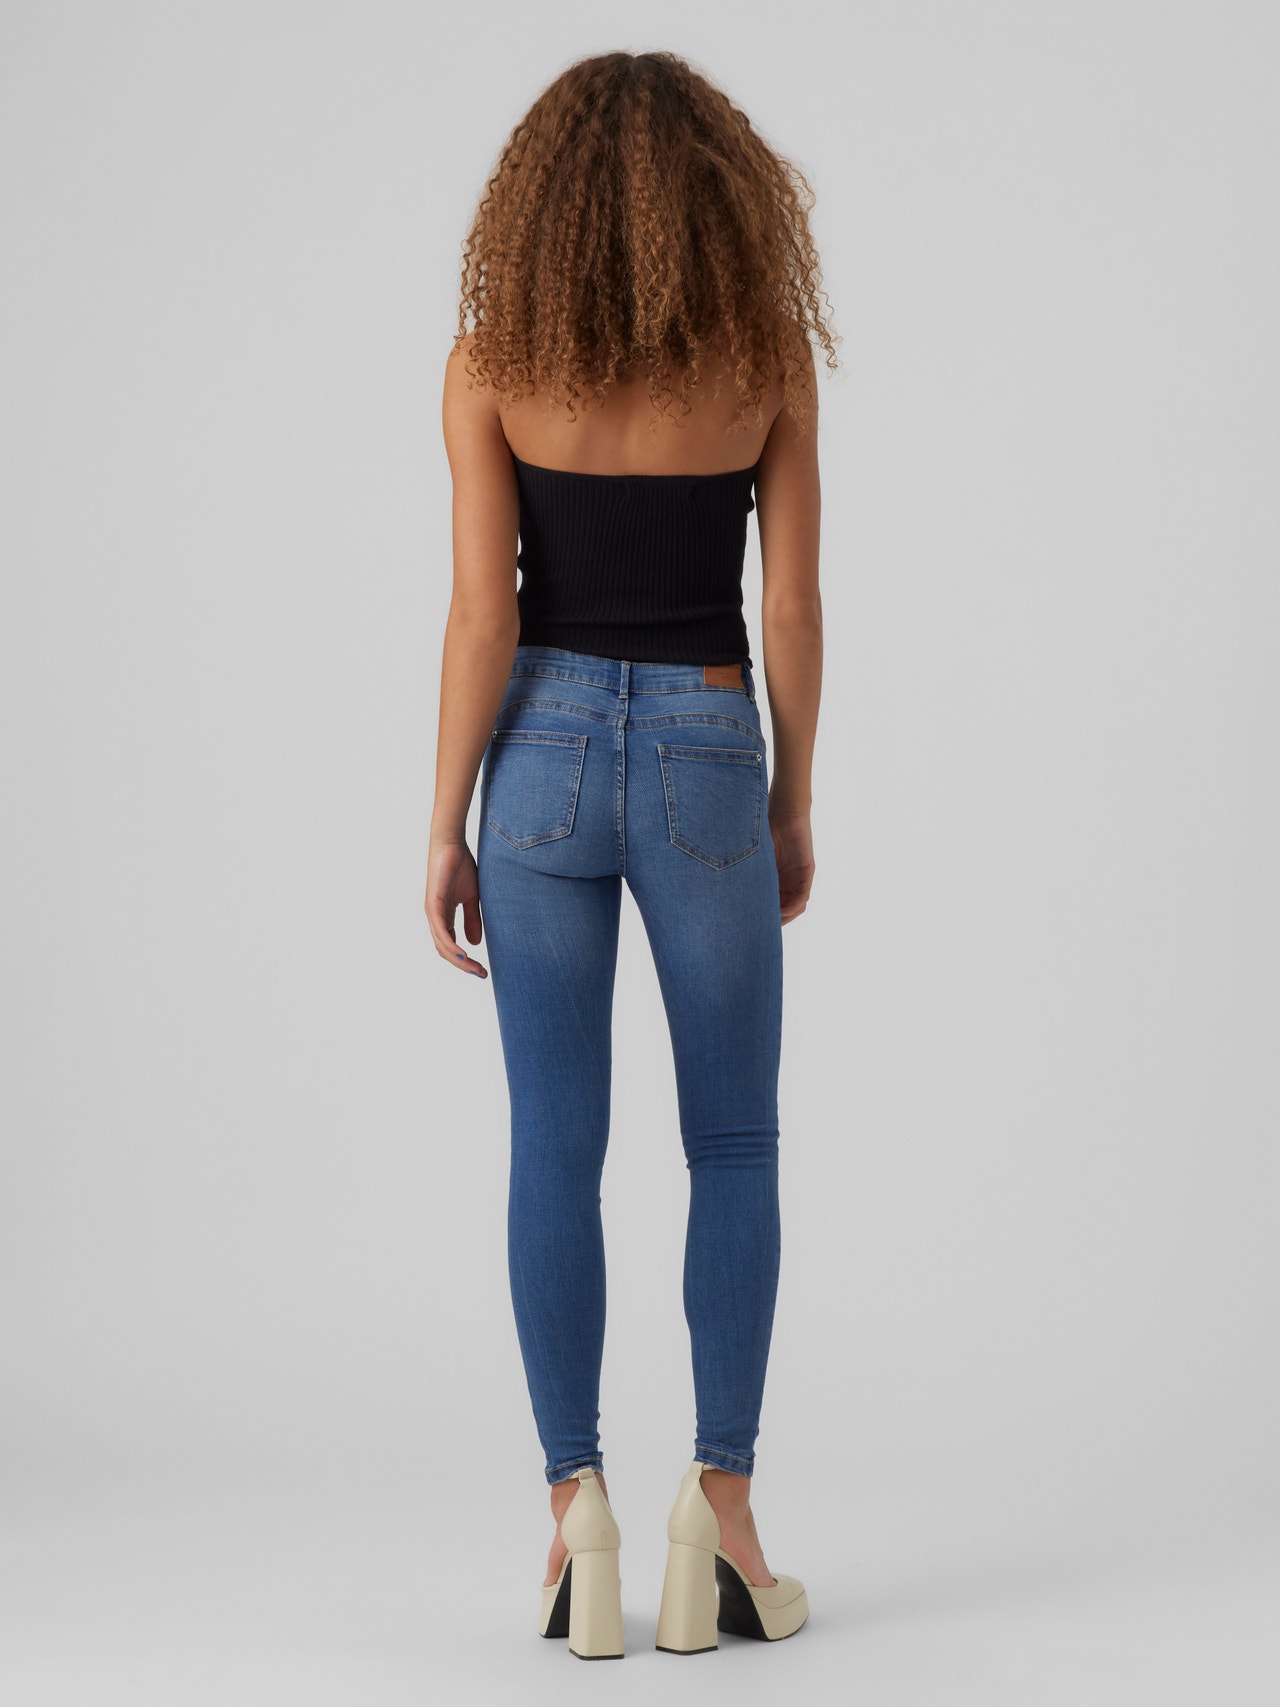 Vero Moda VMALIA Slim Fit Jeans -Medium Blue Denim - 10278825